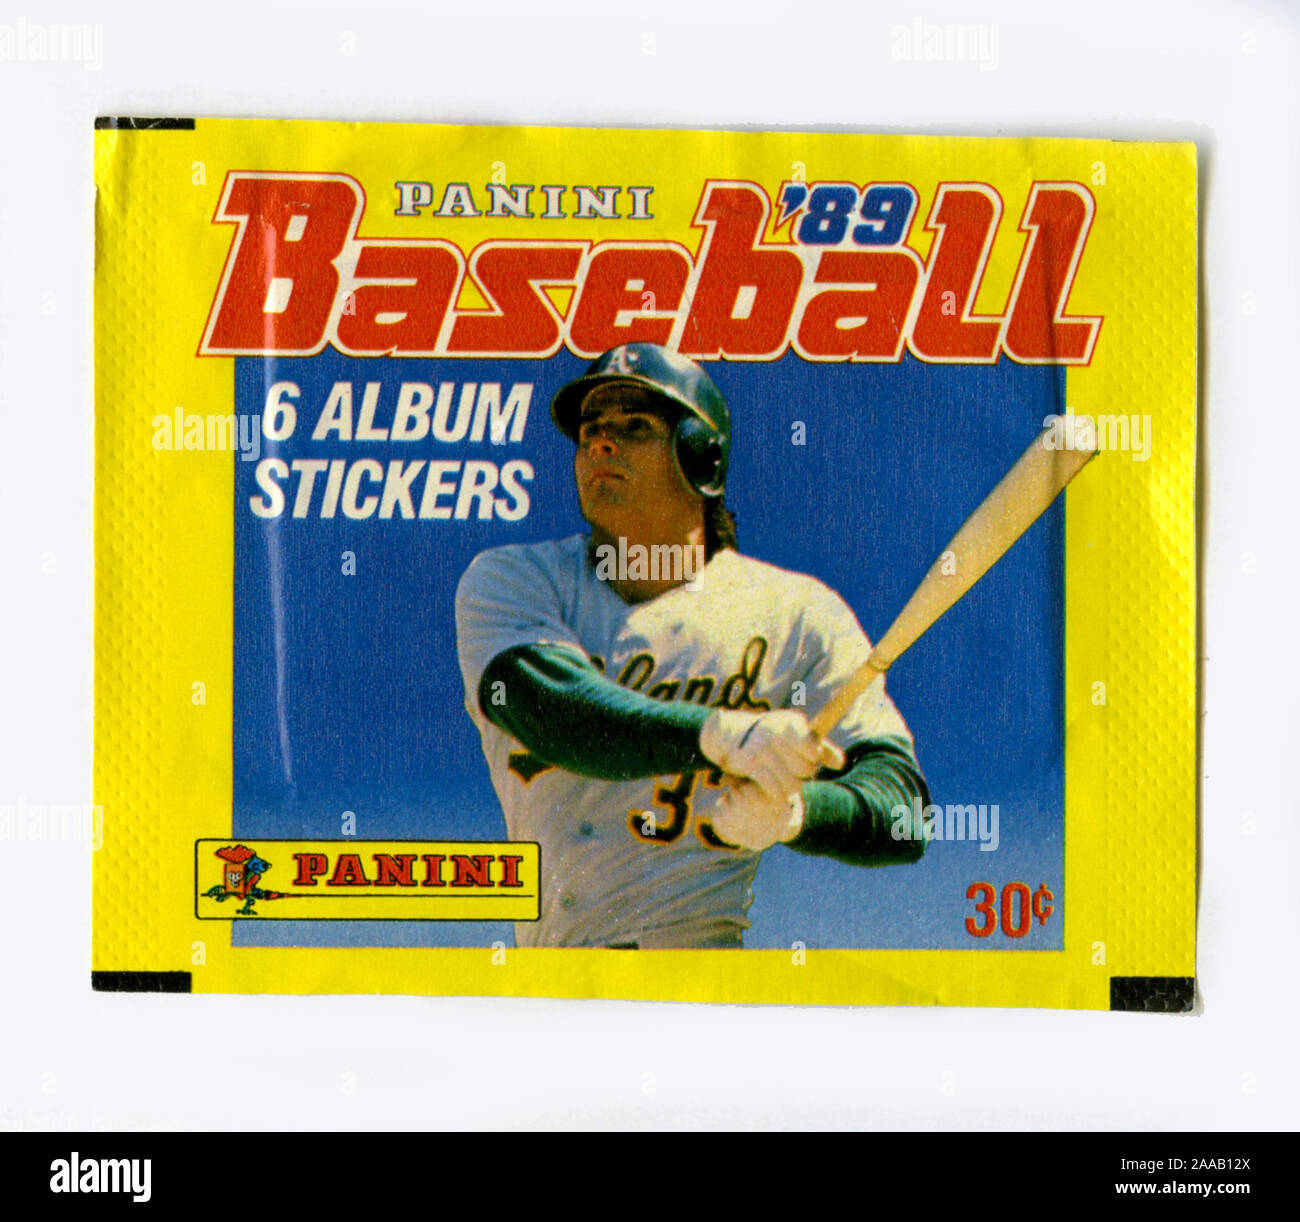 Ein Paket der sammelbaren Panini Marke baseball Aufkleber von 1989 mit den Oakland A's slugger Jose Conseco auf der Verpackung. Canseco wurde später auf Steroide wurden seine Leistung zusammen mit anderen Athleten des Zeitraums zu verbessern. Stockfoto